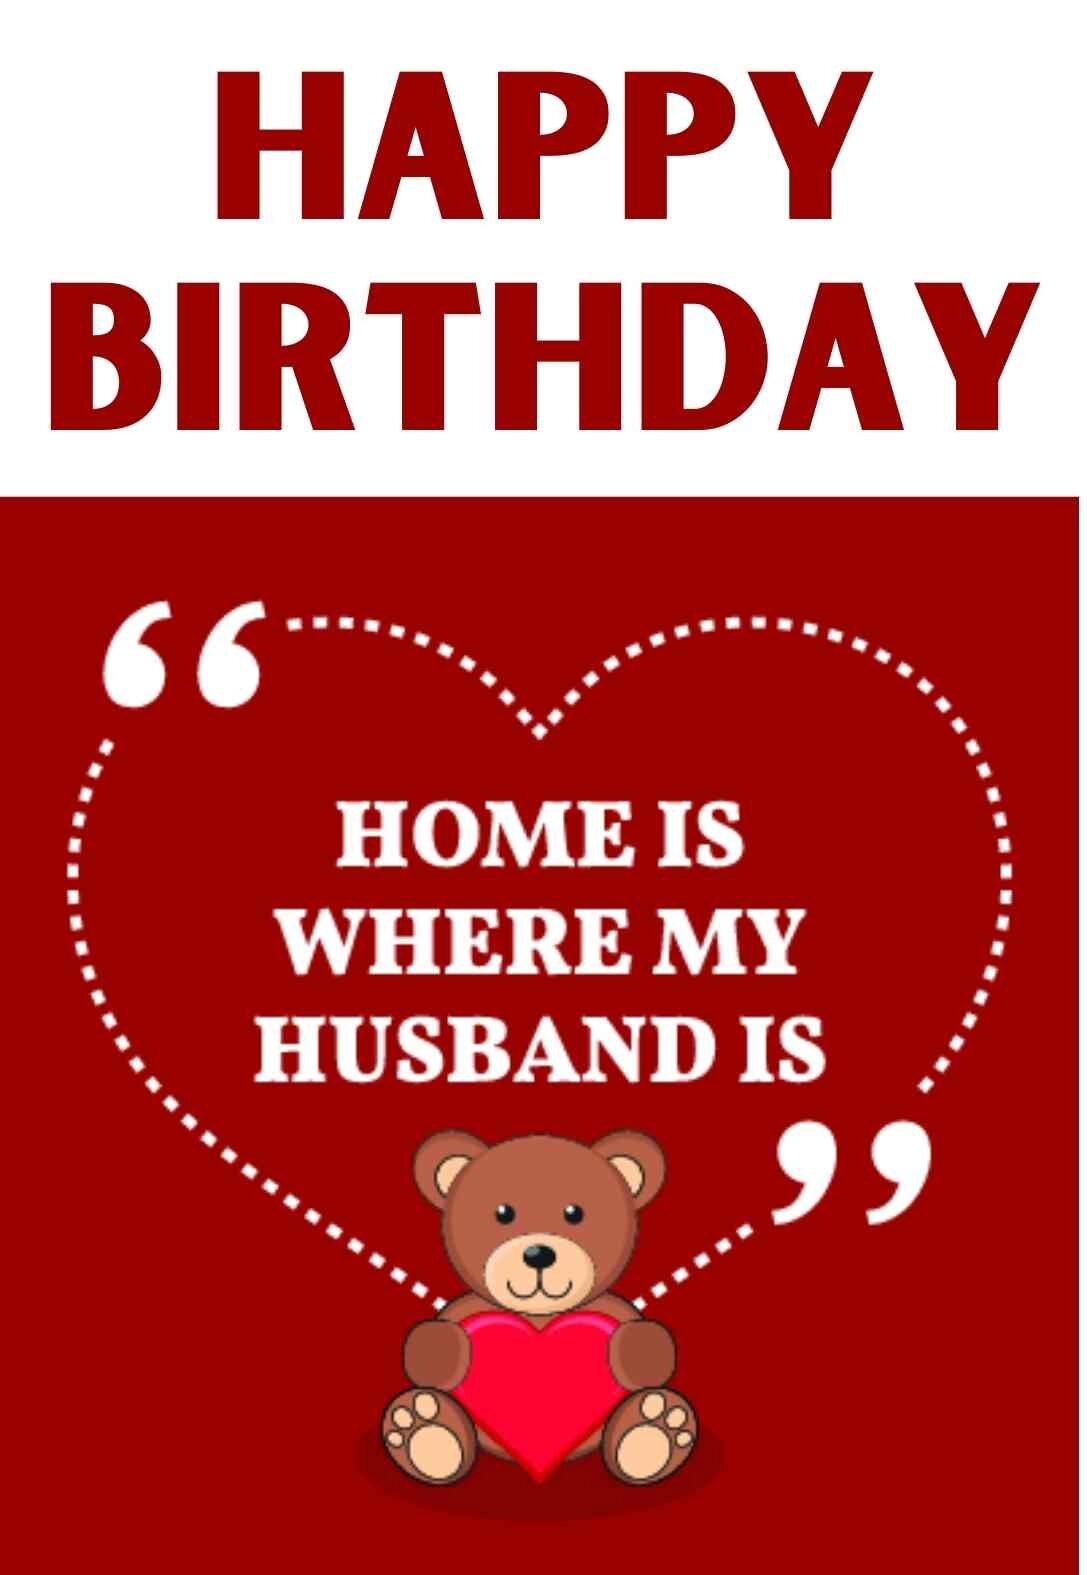 printable-birthday-cards-for-husband-printable-world-holiday